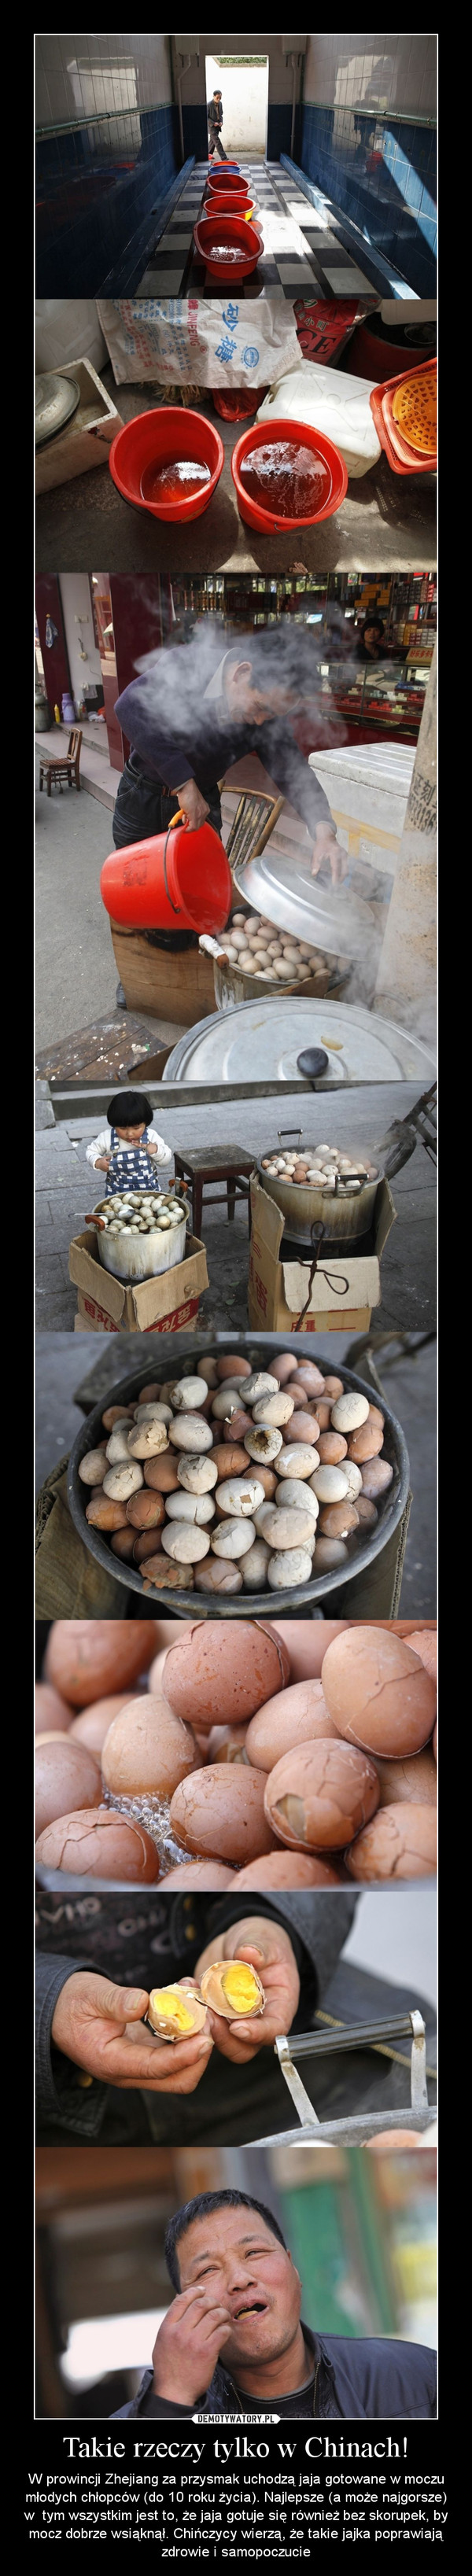 Takie rzeczy tylko w Chinach! – W prowincji Zhejiang za przysmak uchodzą jaja gotowane w moczu młodych chłopców (do 10 roku życia). Najlepsze (a może najgorsze) w  tym wszystkim jest to, że jaja gotuje się również bez skorupek, by mocz dobrze wsiąknął. Chińczycy wierzą, że takie jajka poprawiają zdrowie i samopoczucie 